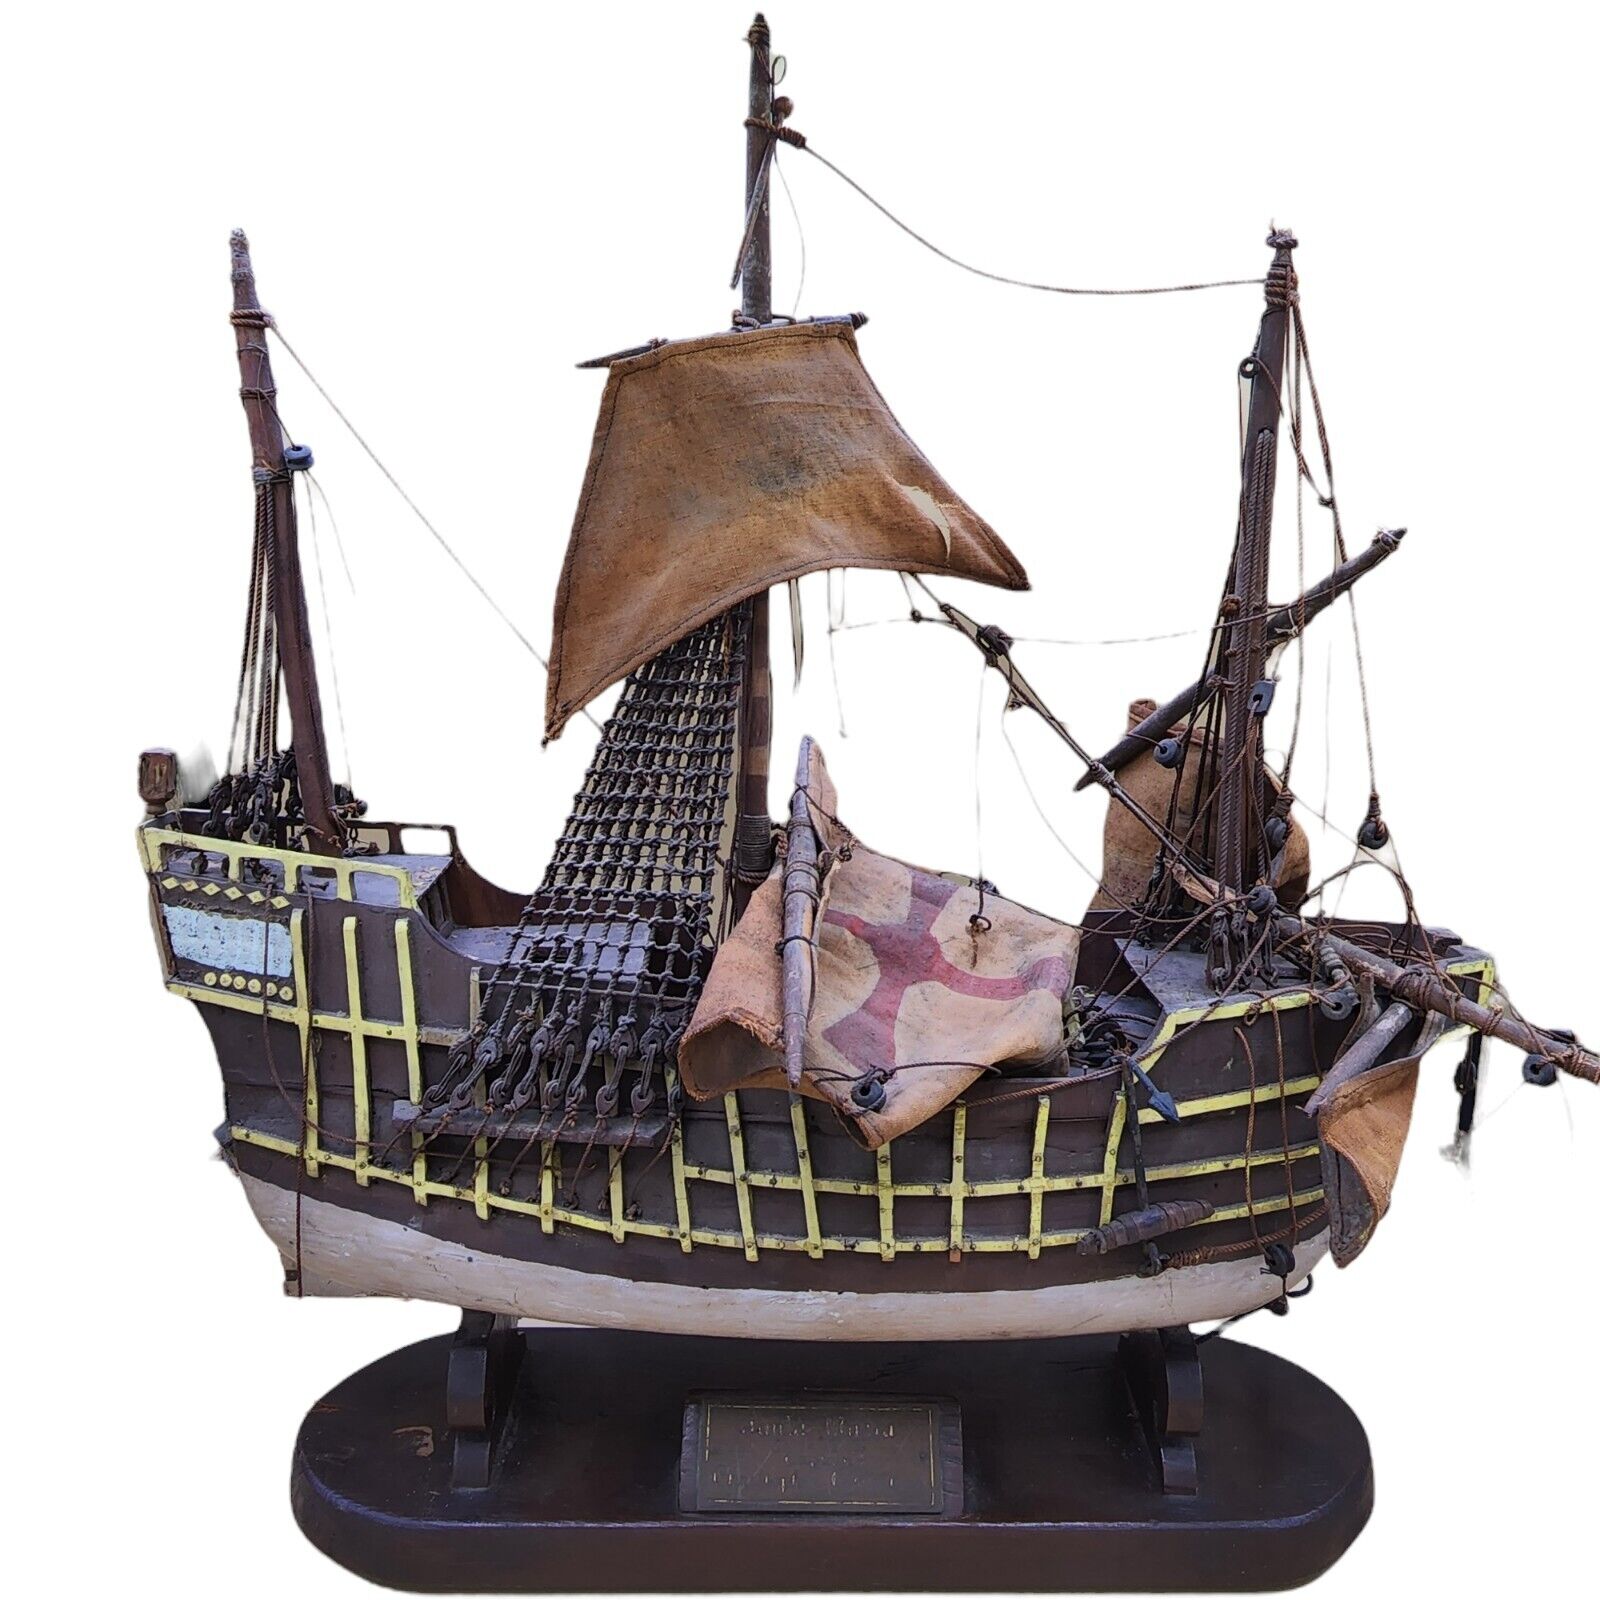 Antique Ship Wrecked Santa Maria ship model flagship of Christopher Columbus